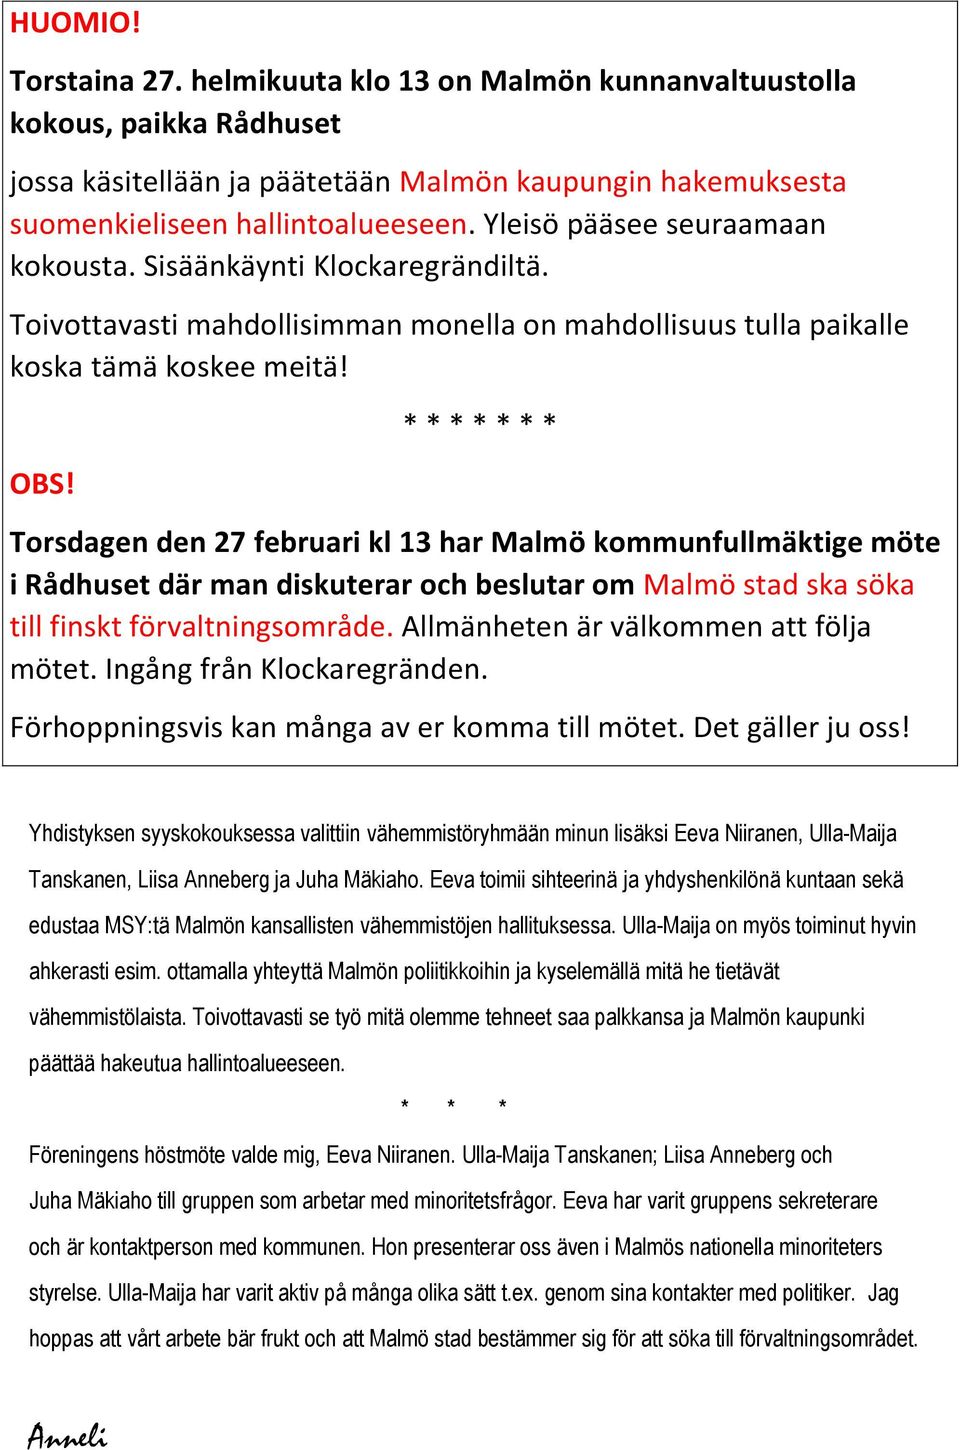 * * * * * * * Torsdagen den 27 februari kl 13 har Malmö kommunfullmäktige möte i Rådhuset där man diskuterar och beslutar om Malmö stad ska söka till finskt förvaltningsområde.